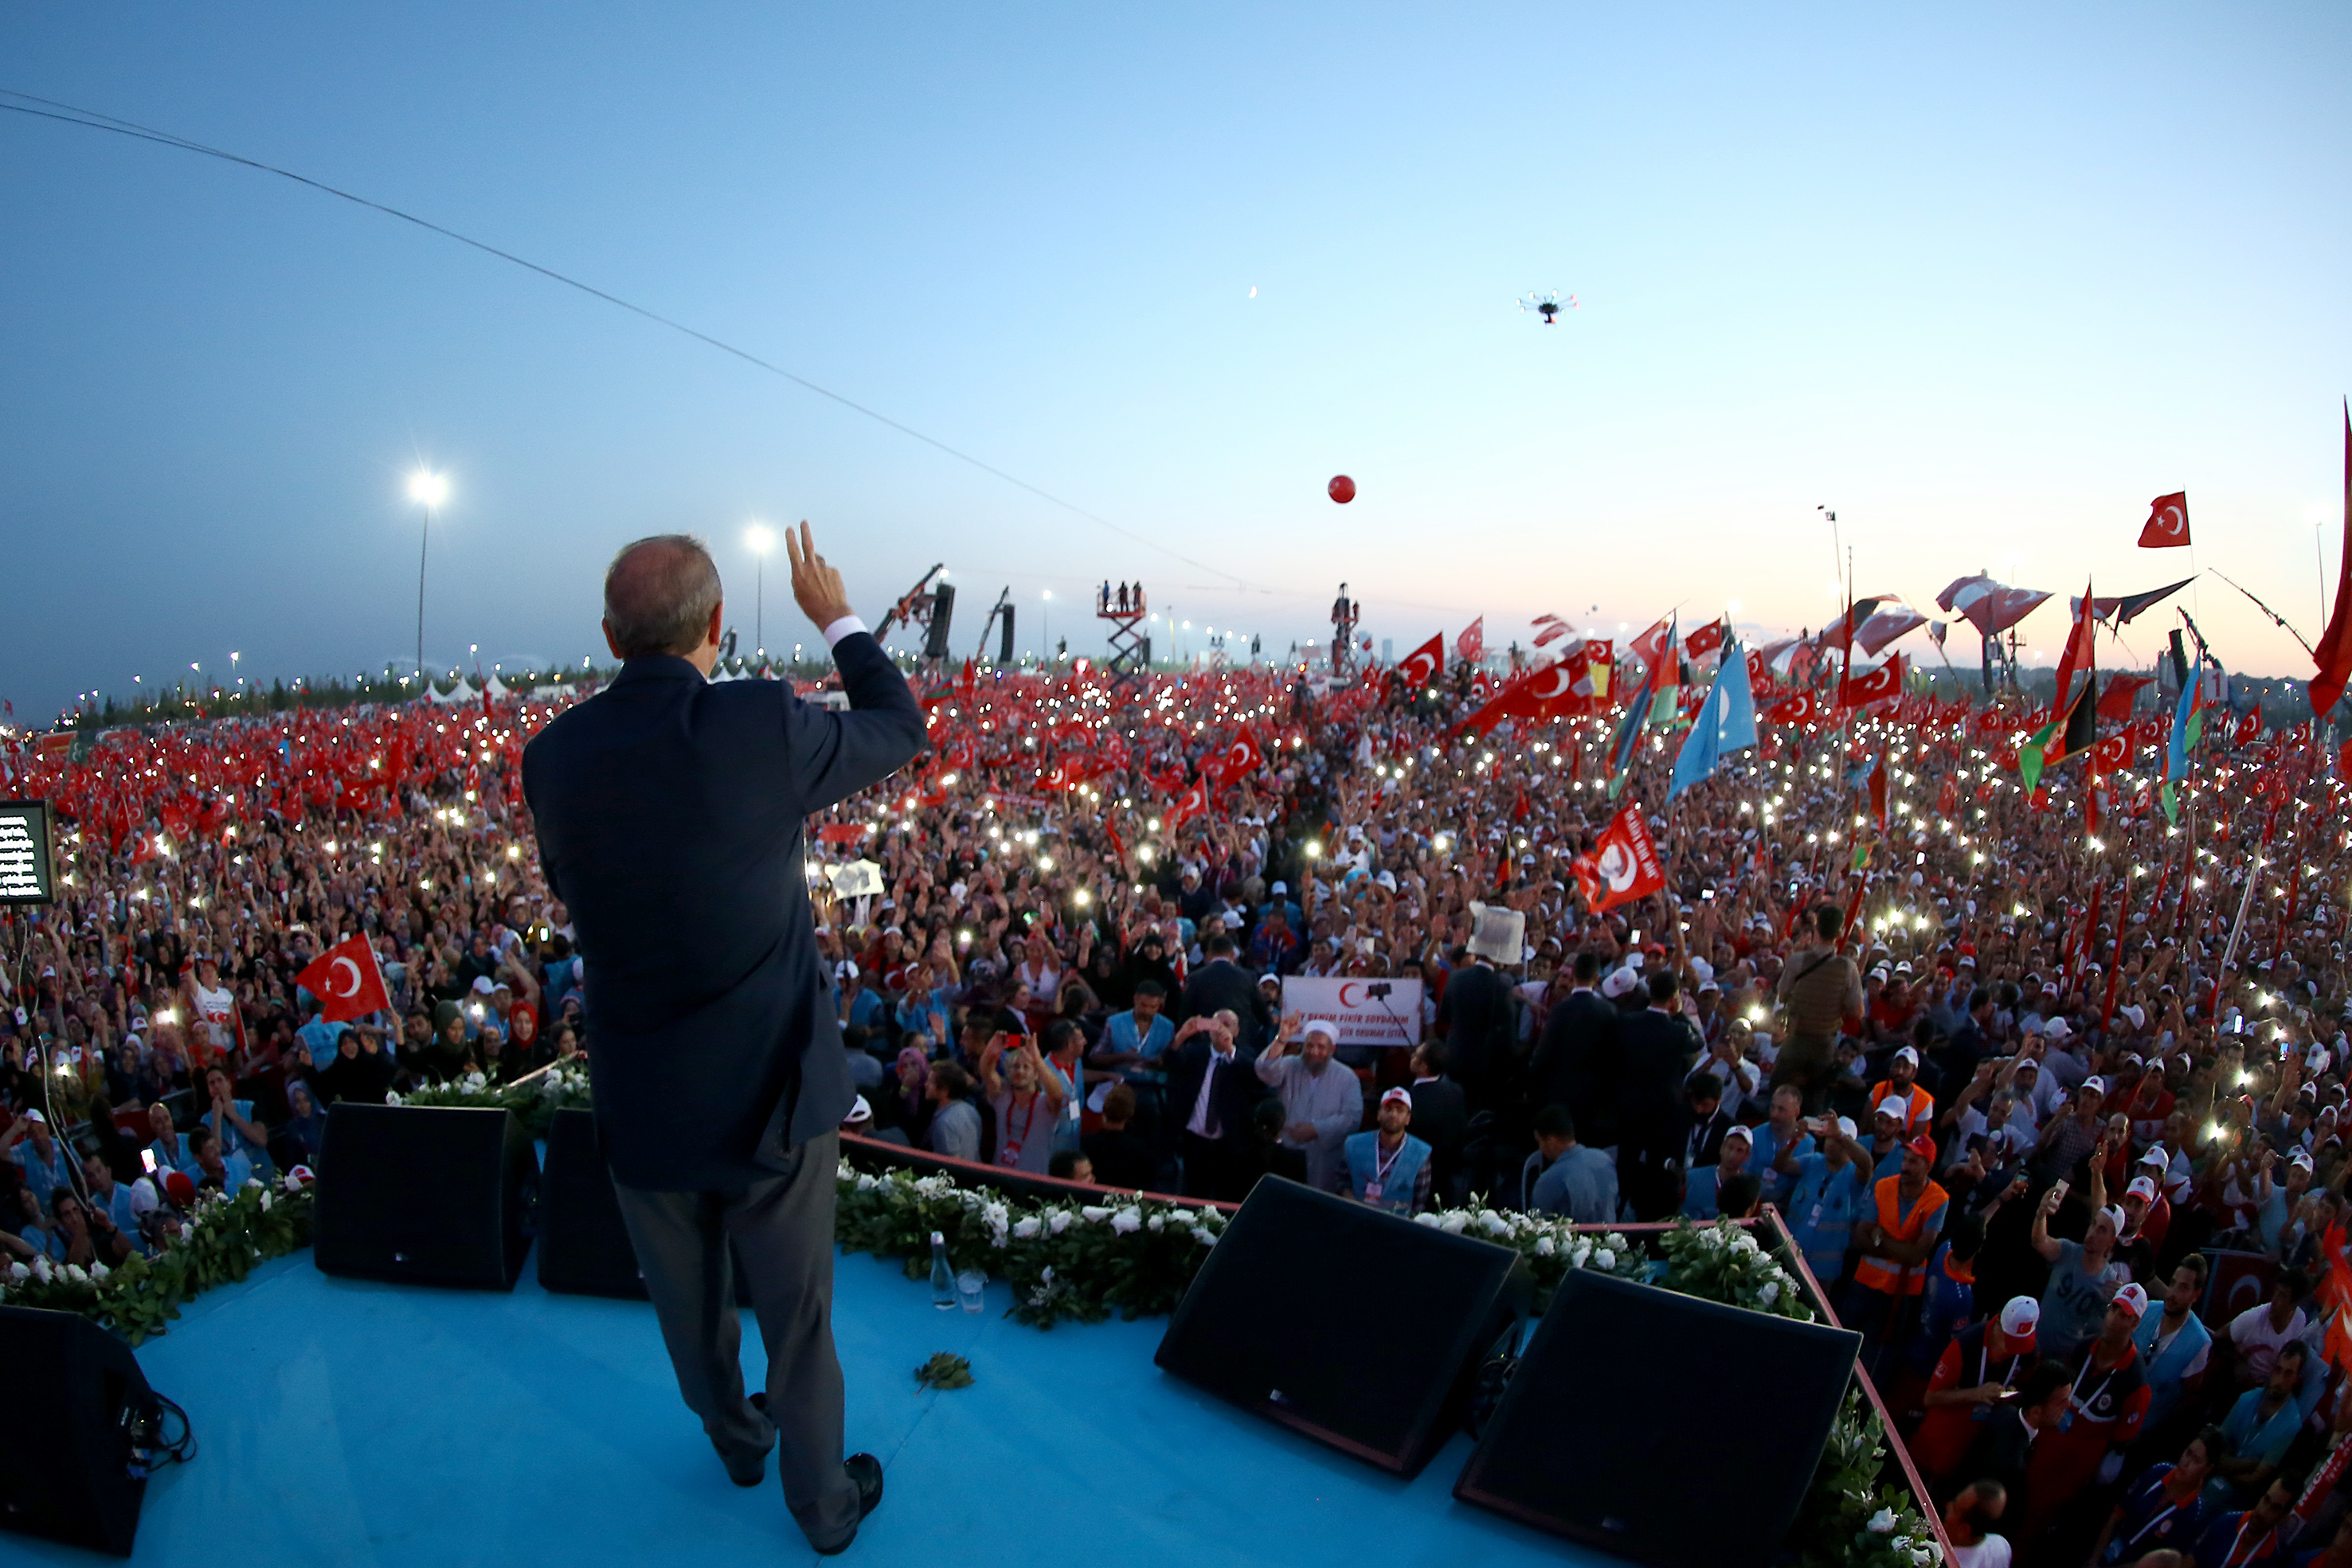 تم تنظيم لقاء جماهيري تحت اسم ’الديموقراطية والشهداء’ عقب نداء رئيس الجمهورية أردوغان بعد محاولة الإنقلاب.